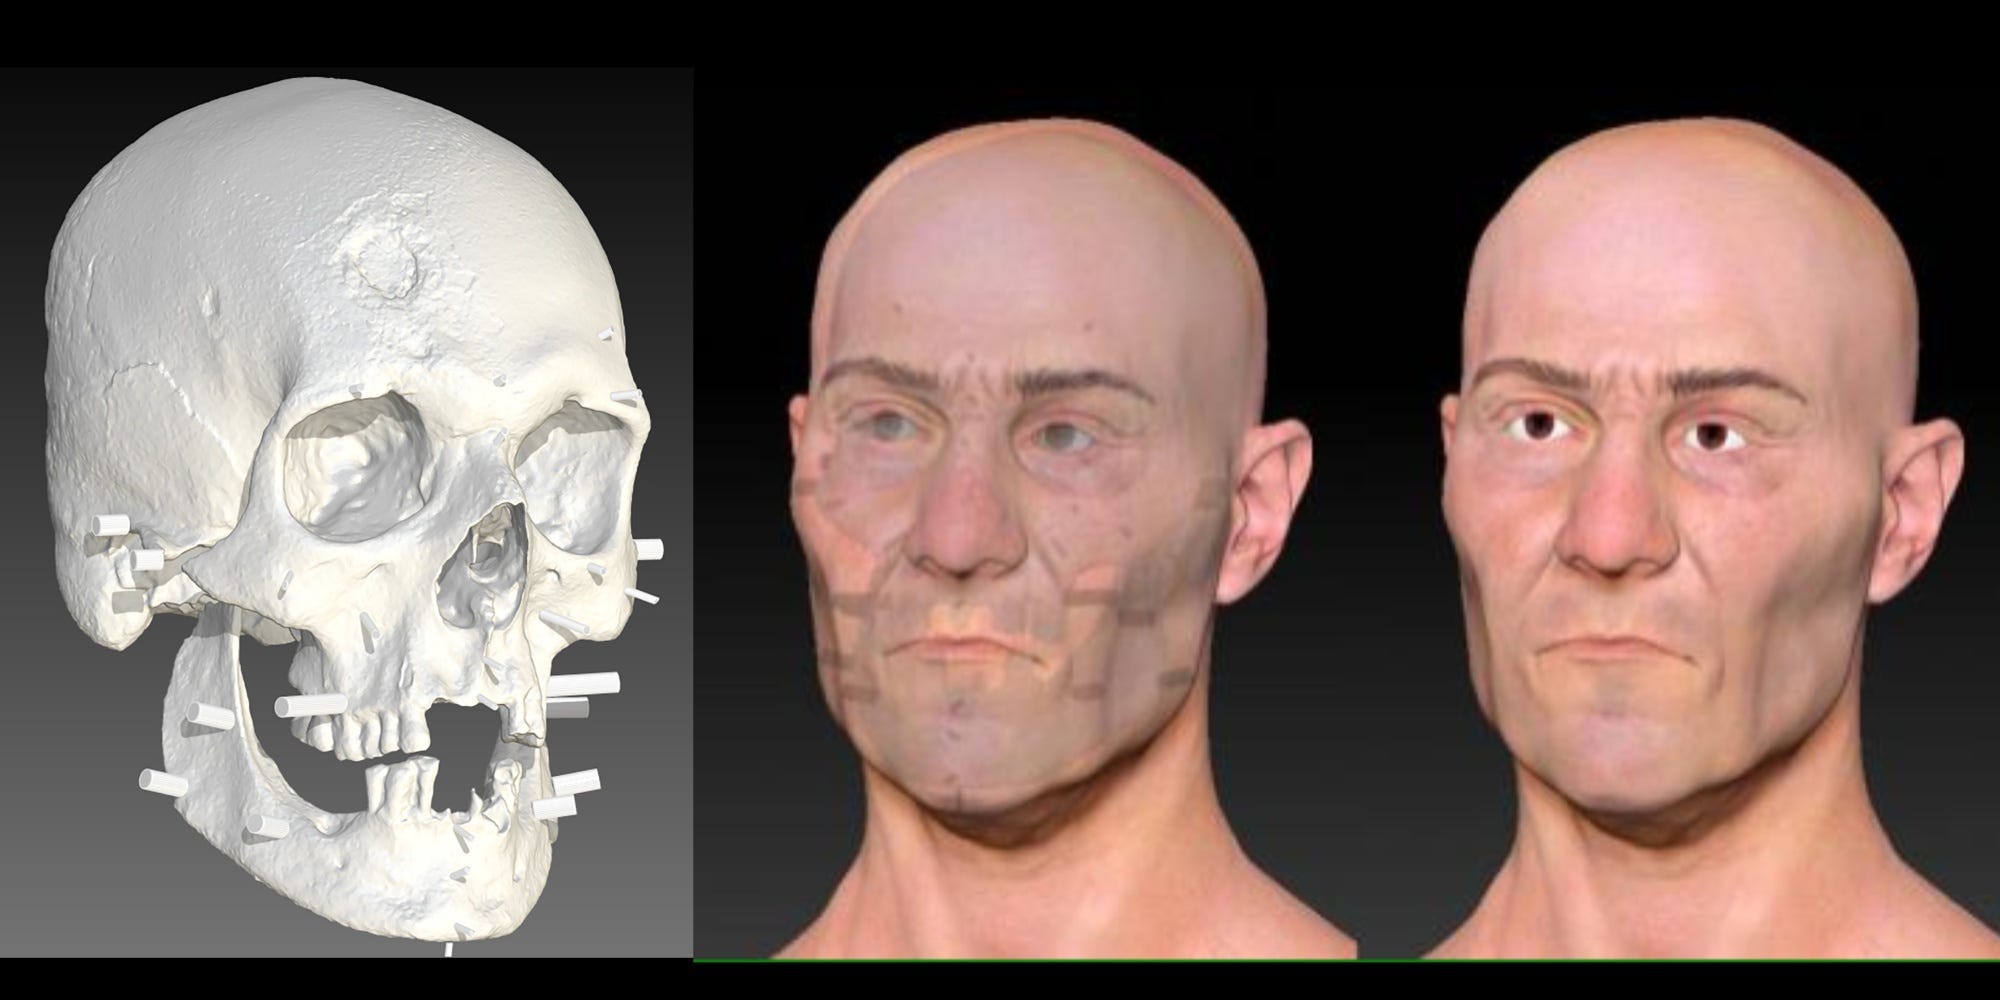 Die Abbildungen nebeneinander zeigen einen digitalen 3D-Scan des Schädels des Connecticut-Vampirs neben einer digitalen Rekonstruktion seines Gesichts, dem nach und nach Merkmale hinzugefügt werden.